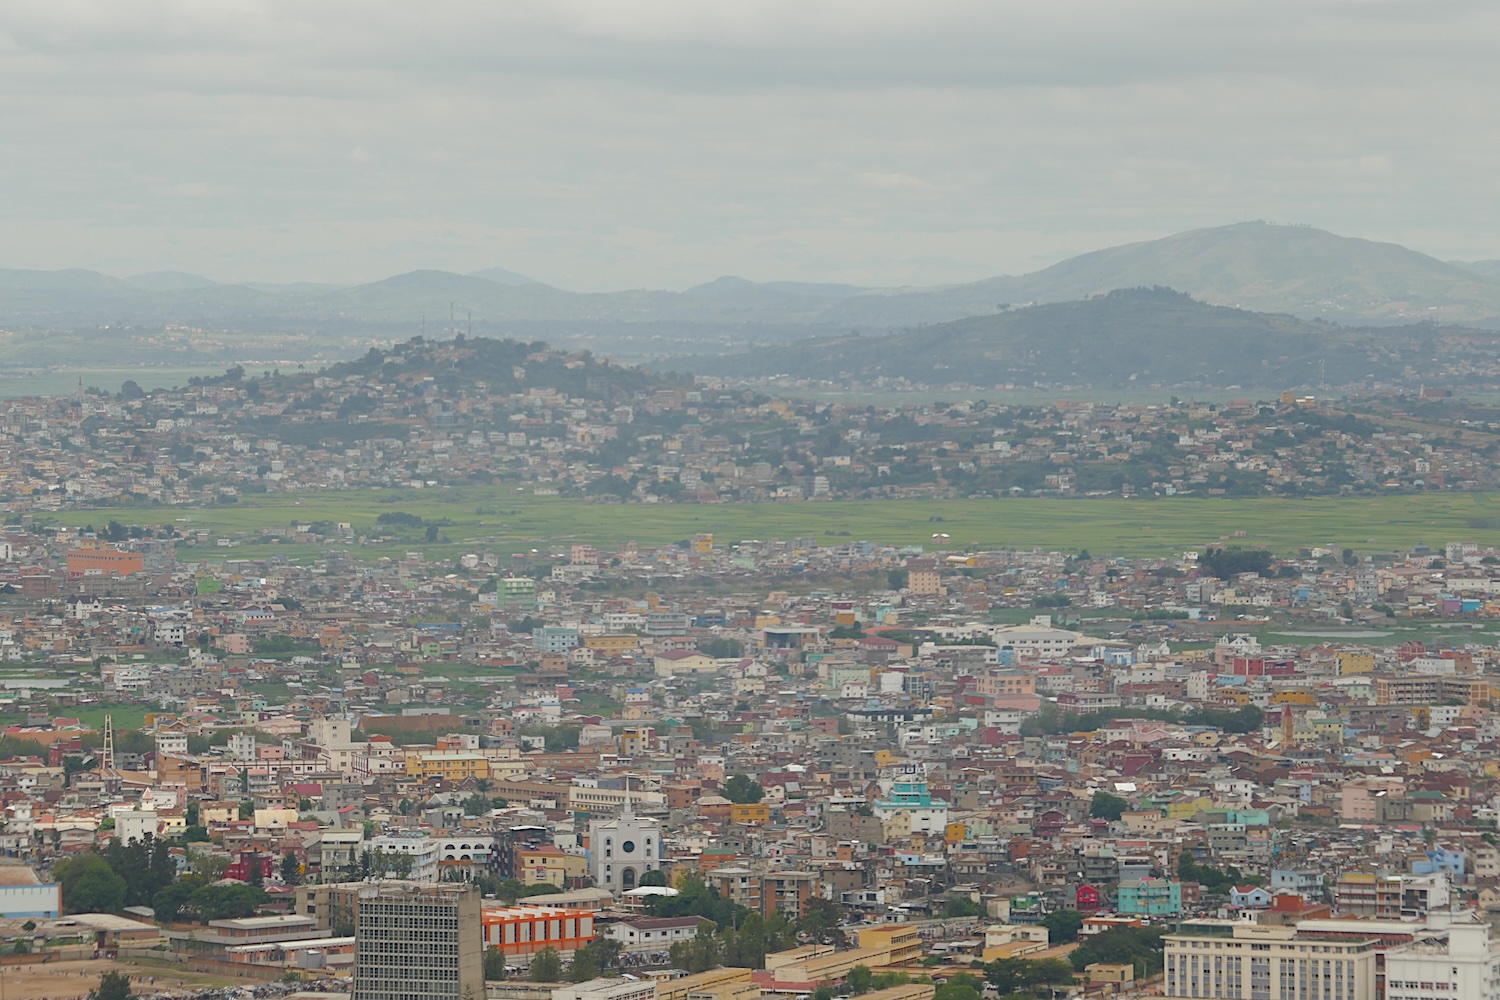 La ville d’Antananarivo a connu des pics de pollution les dernières années. Ces niveaux ont descendu après des campagnes de sensibilisation © Globe Reporters